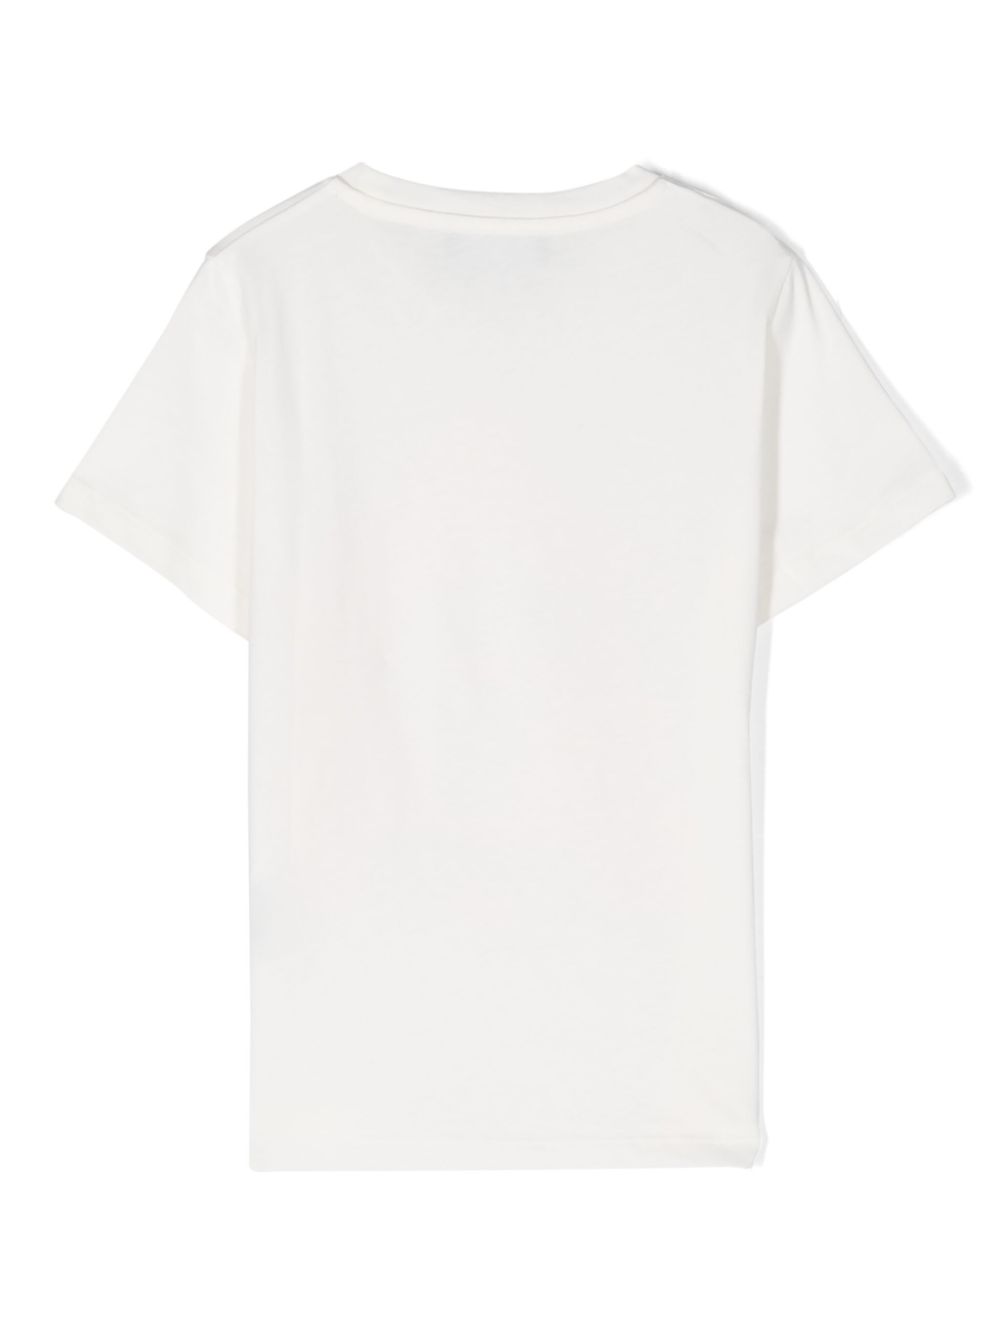 T-shirt bébé blanc/rose